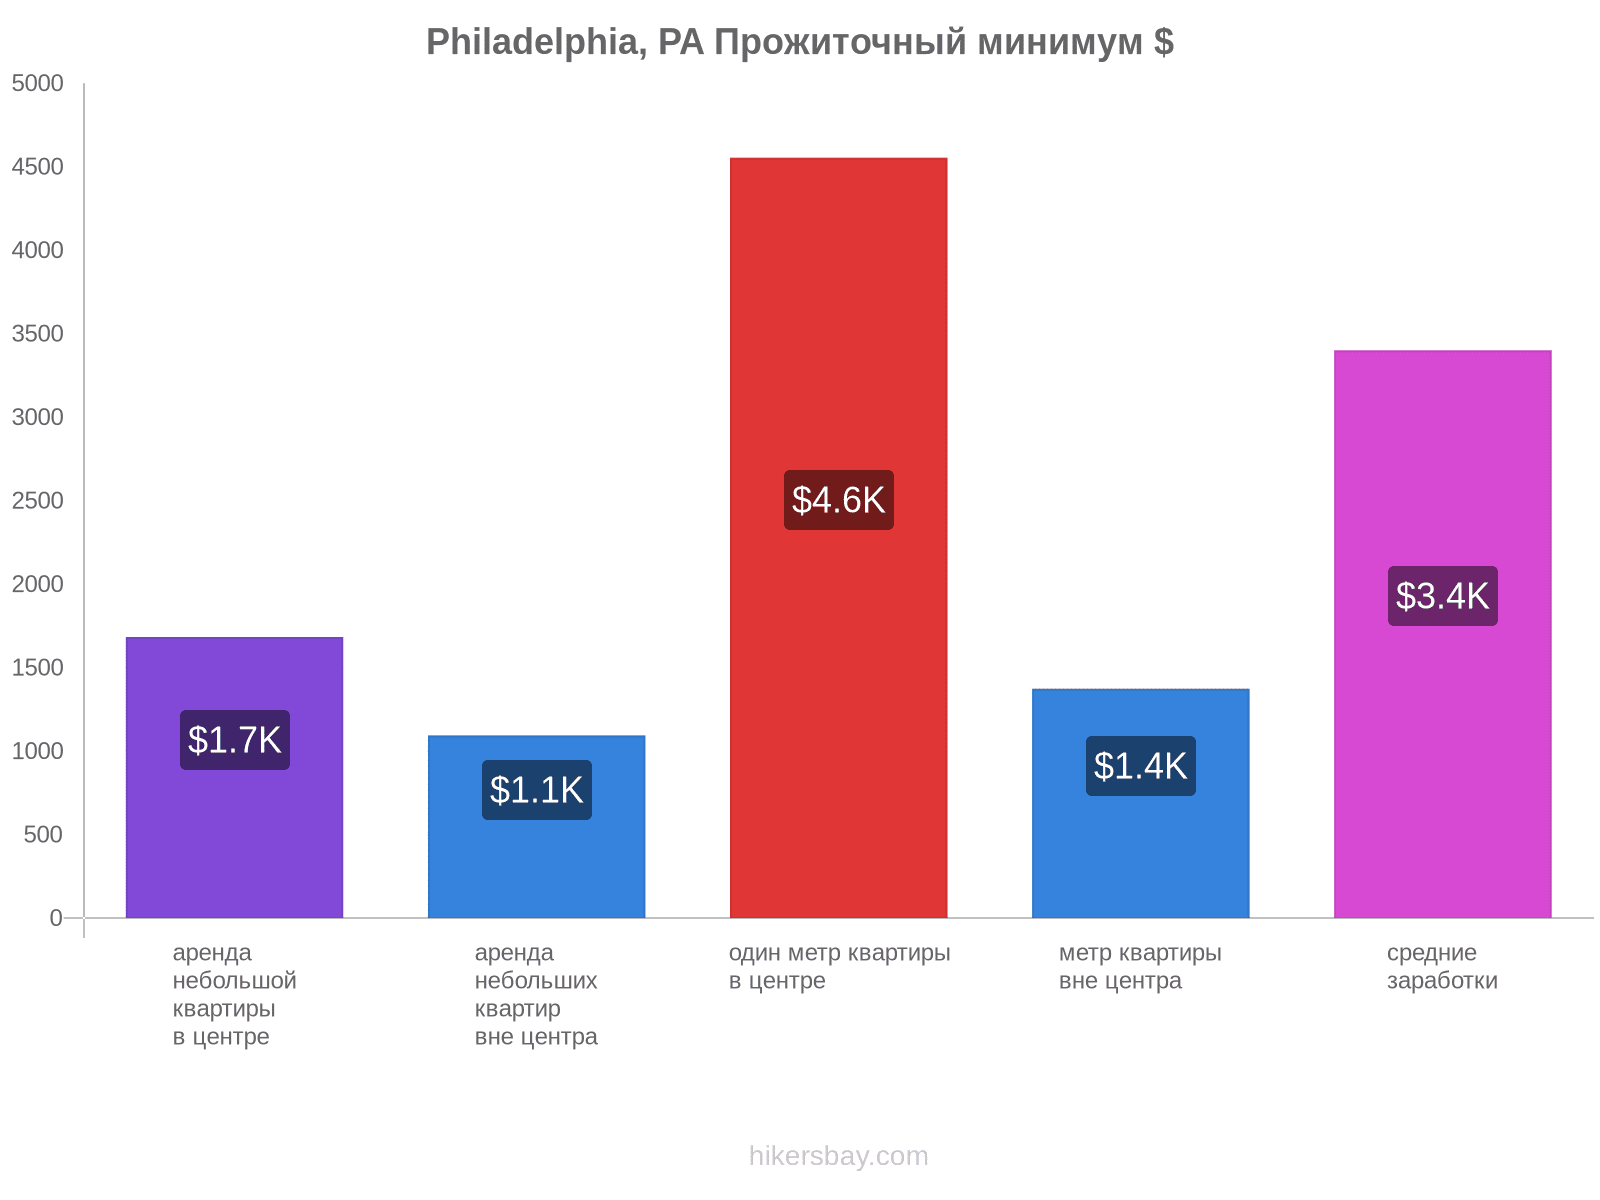 Philadelphia, PA стоимость жизни hikersbay.com